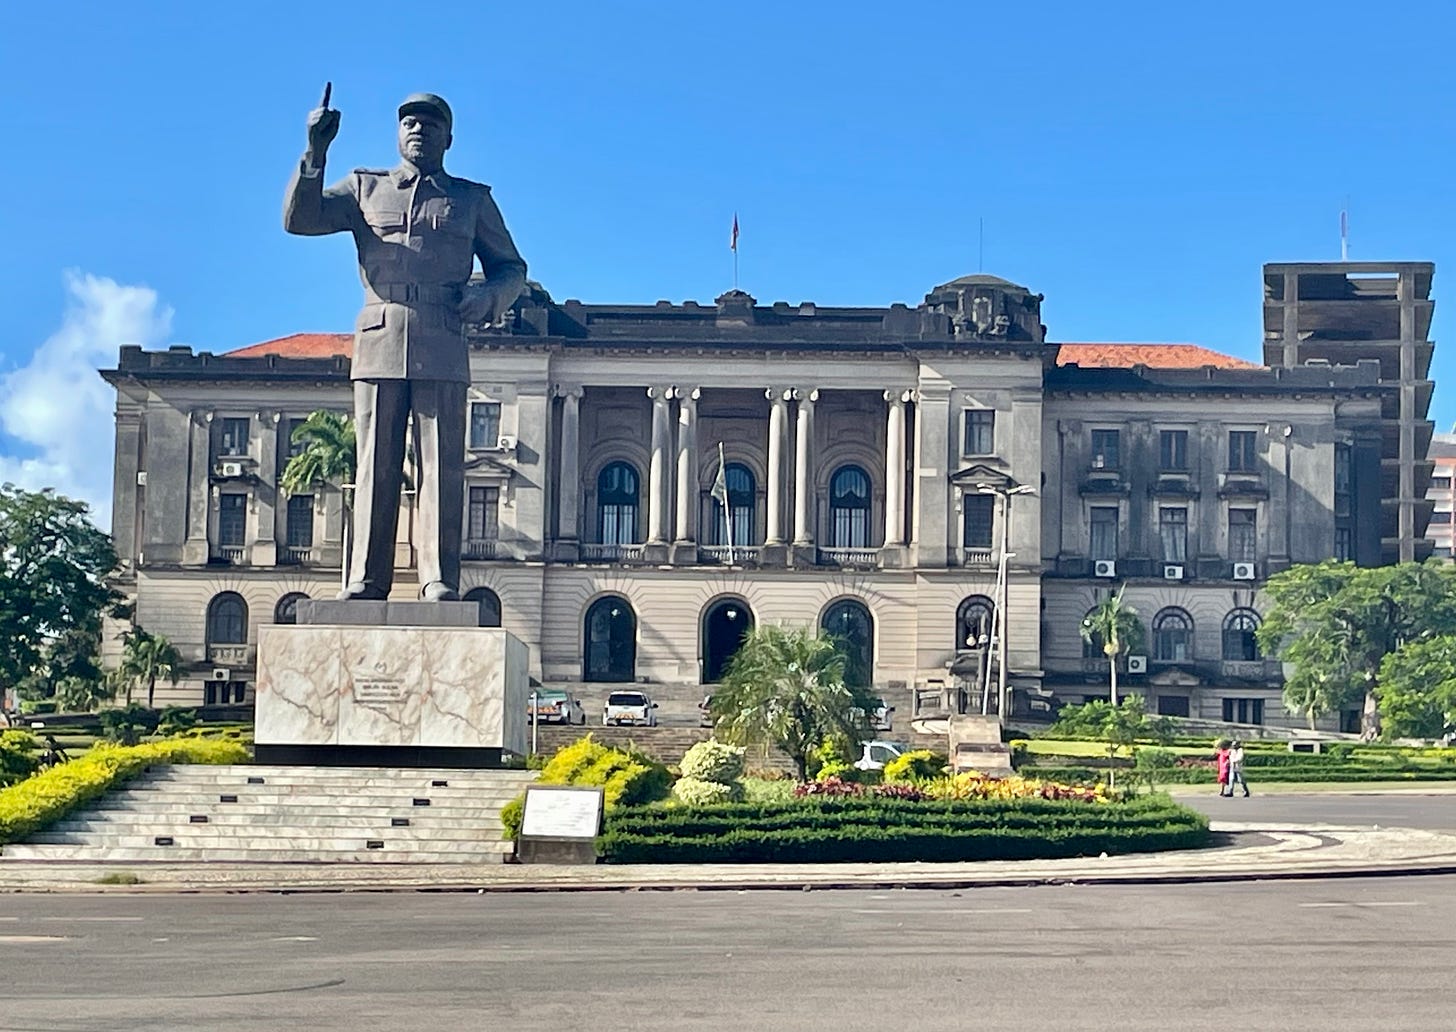 Statue of Zamora Machel, former Mozambique leader, in Maputo